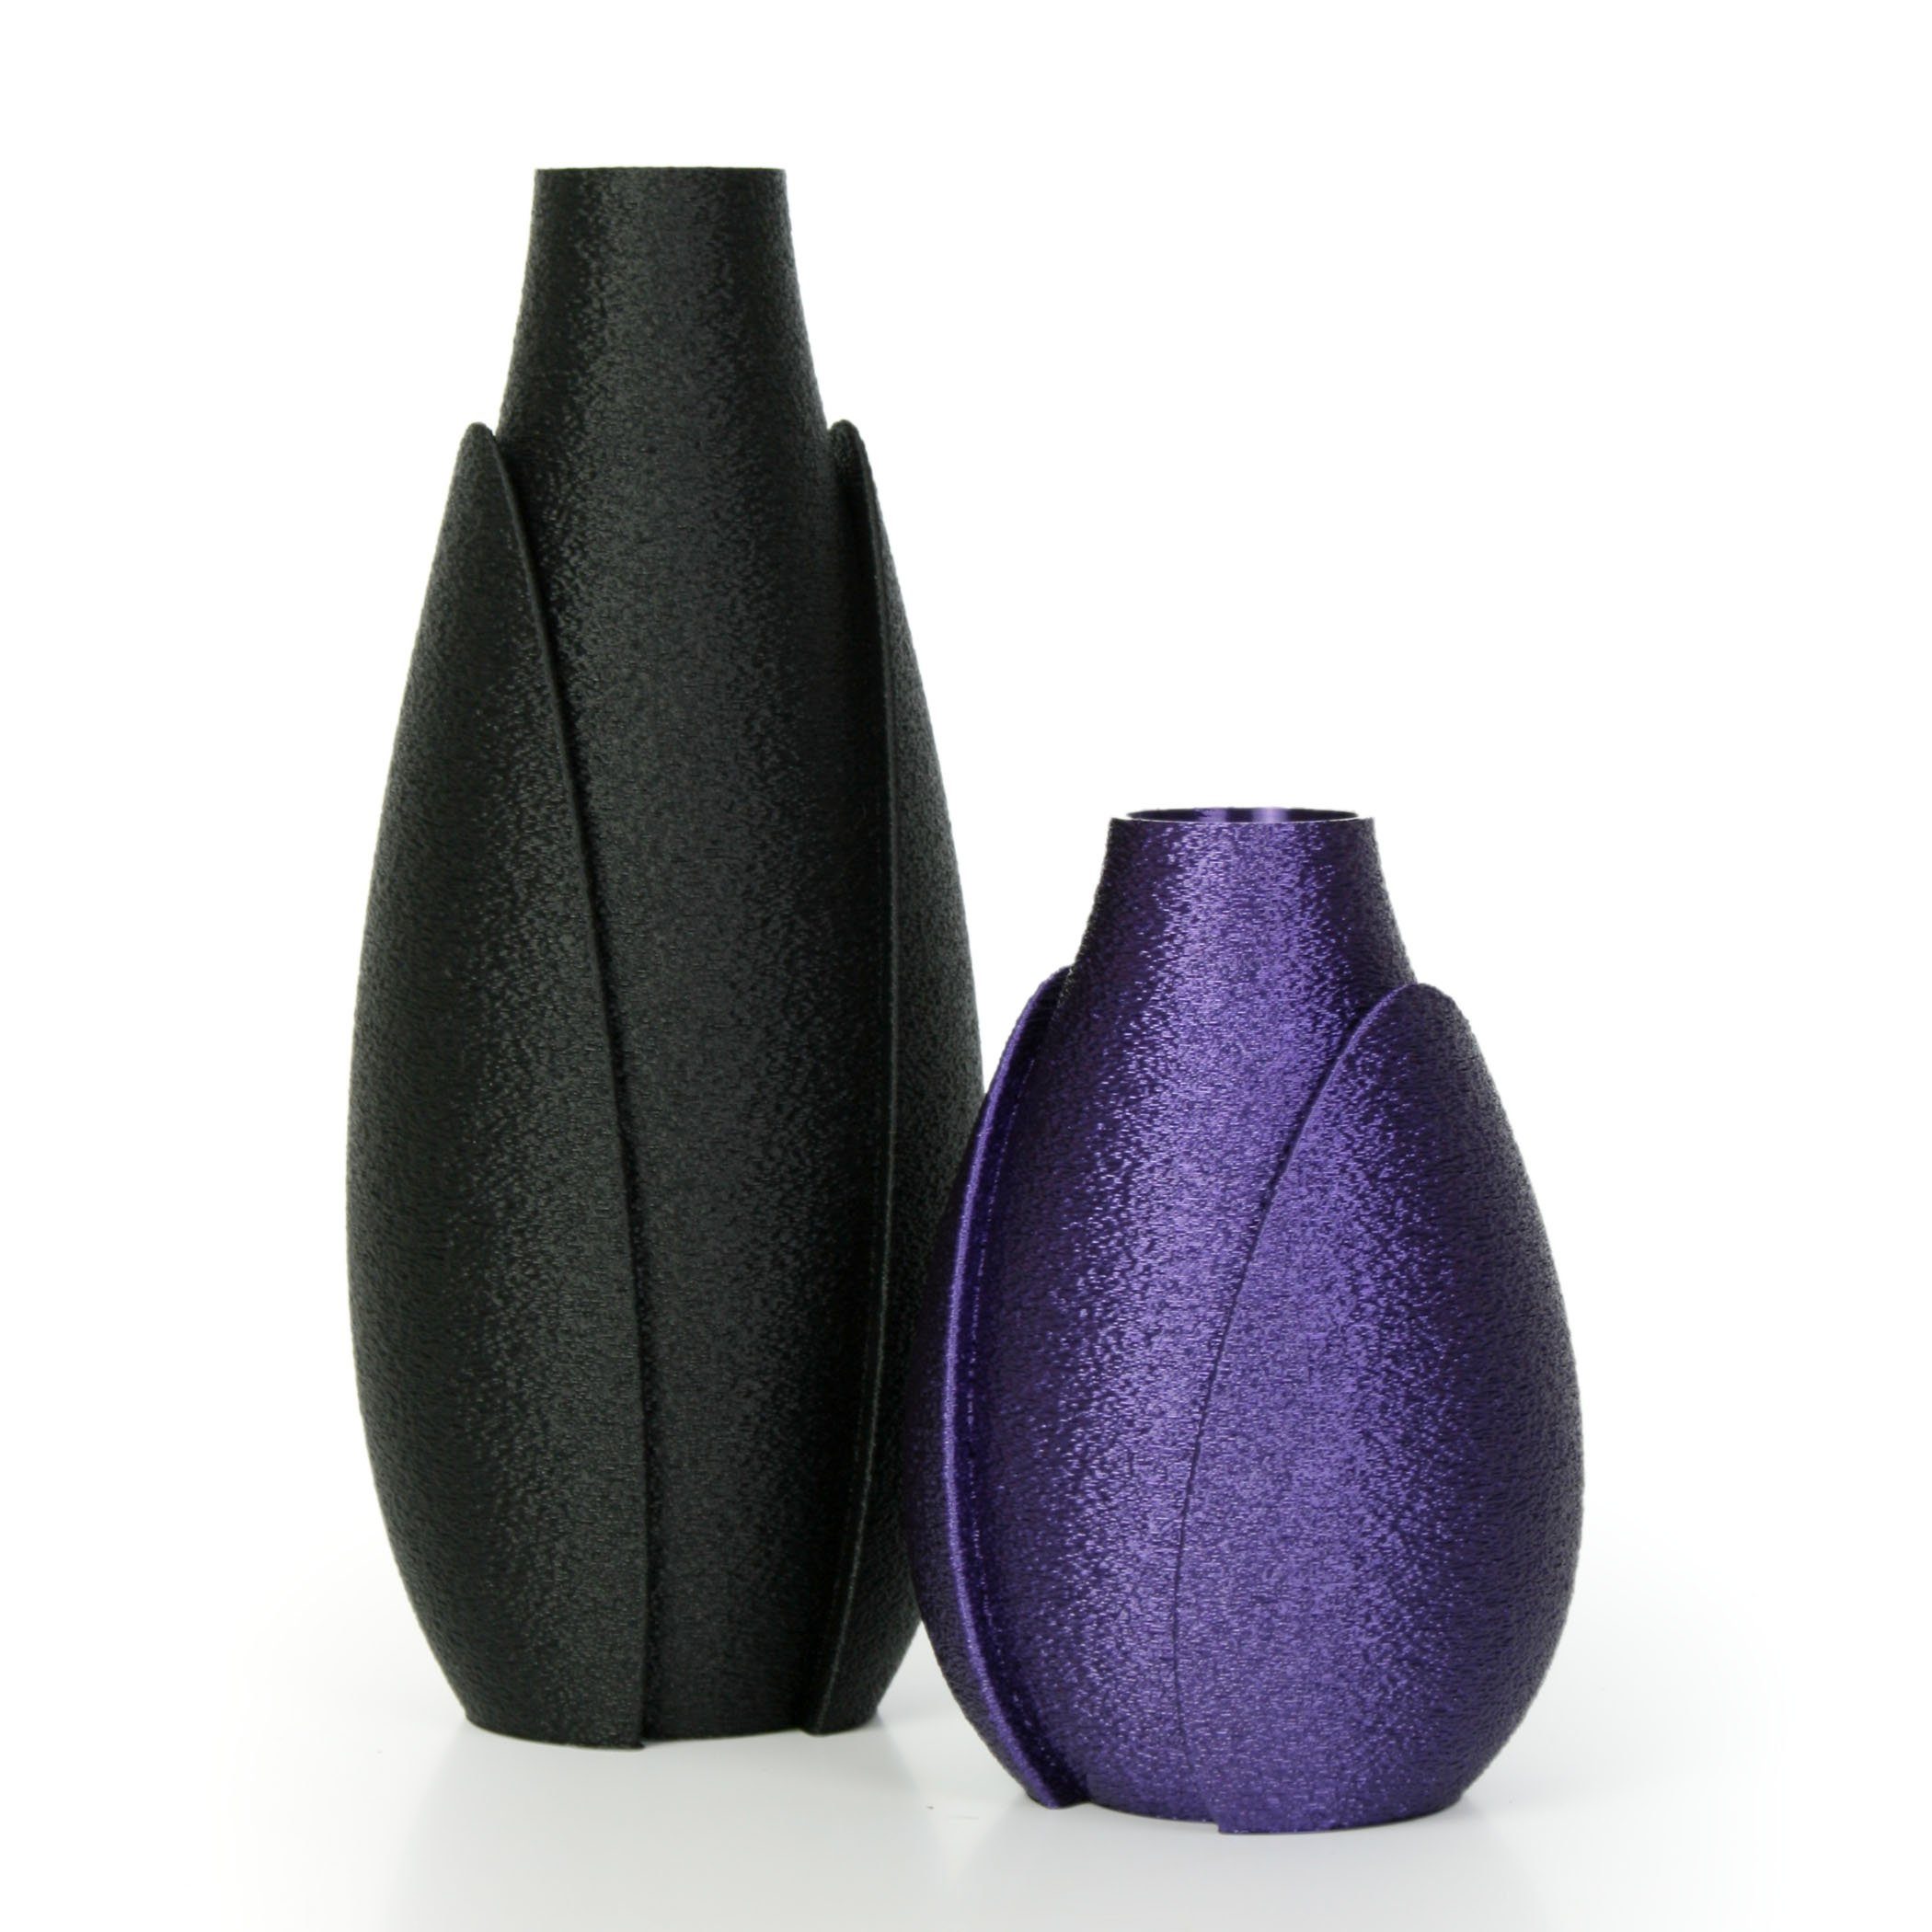 Kreative Feder Dekovase Designer Vasen-Set – Dekorative Blumenvasen aus Bio-Kunststoff (Set, Set bestehend aus 2 Vasen), aus nachwachsenden Rohstoffen; wasserdicht & bruchsicher Schwarz & Lila